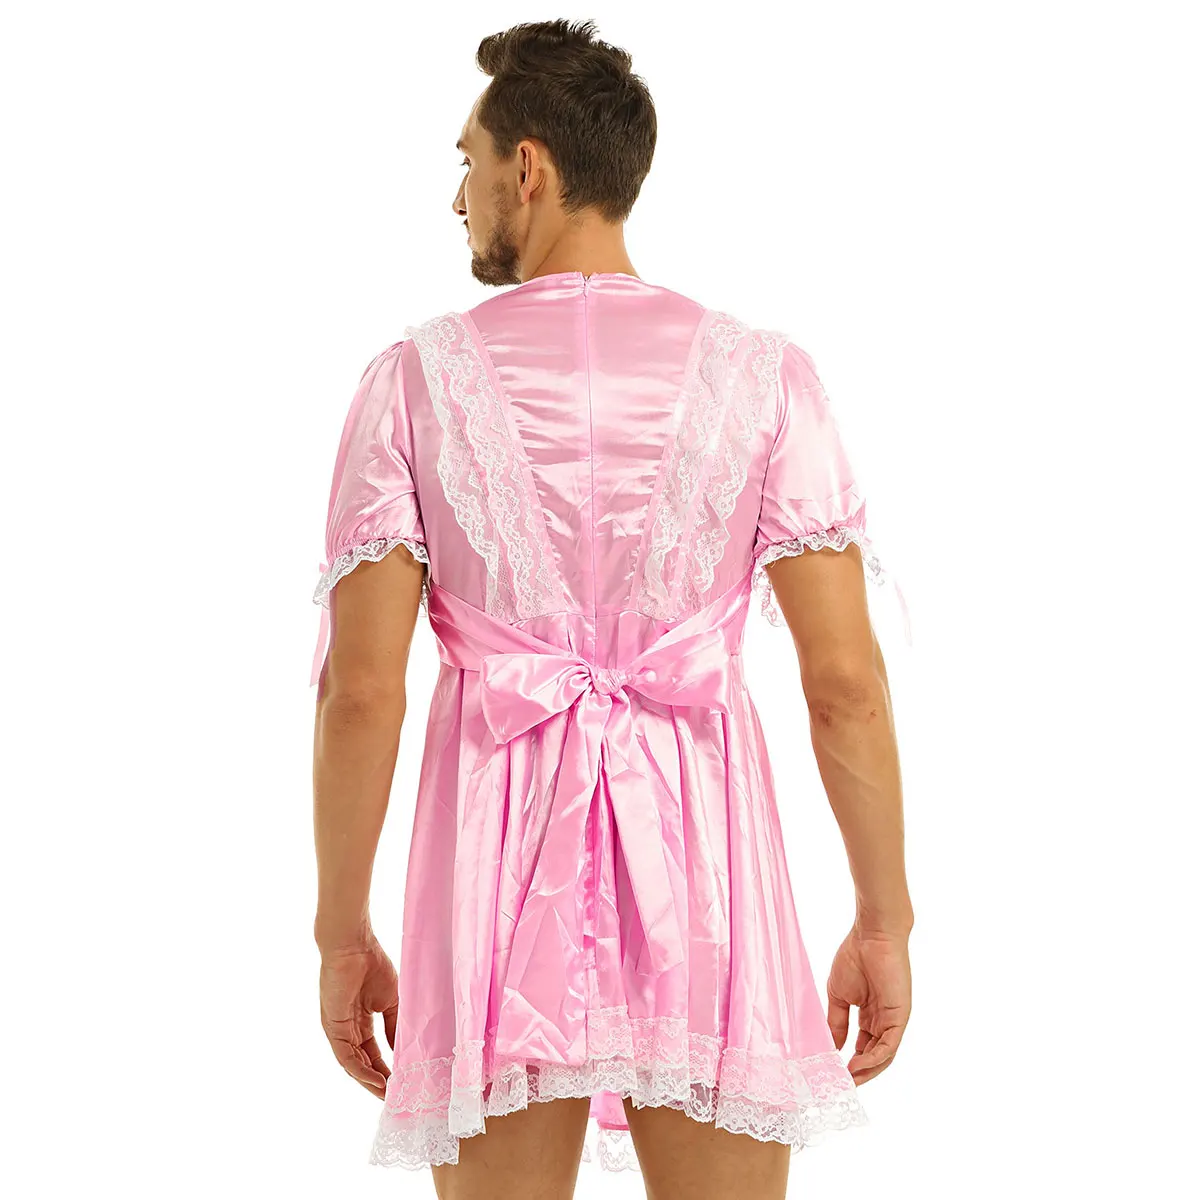 MSemis, мужские экзотические платья для взрослых, атласные, с короткими рукавами-фонариками, с кружевным бантом, платье для взрослых, Детский костюм для костюма, одежда для сна